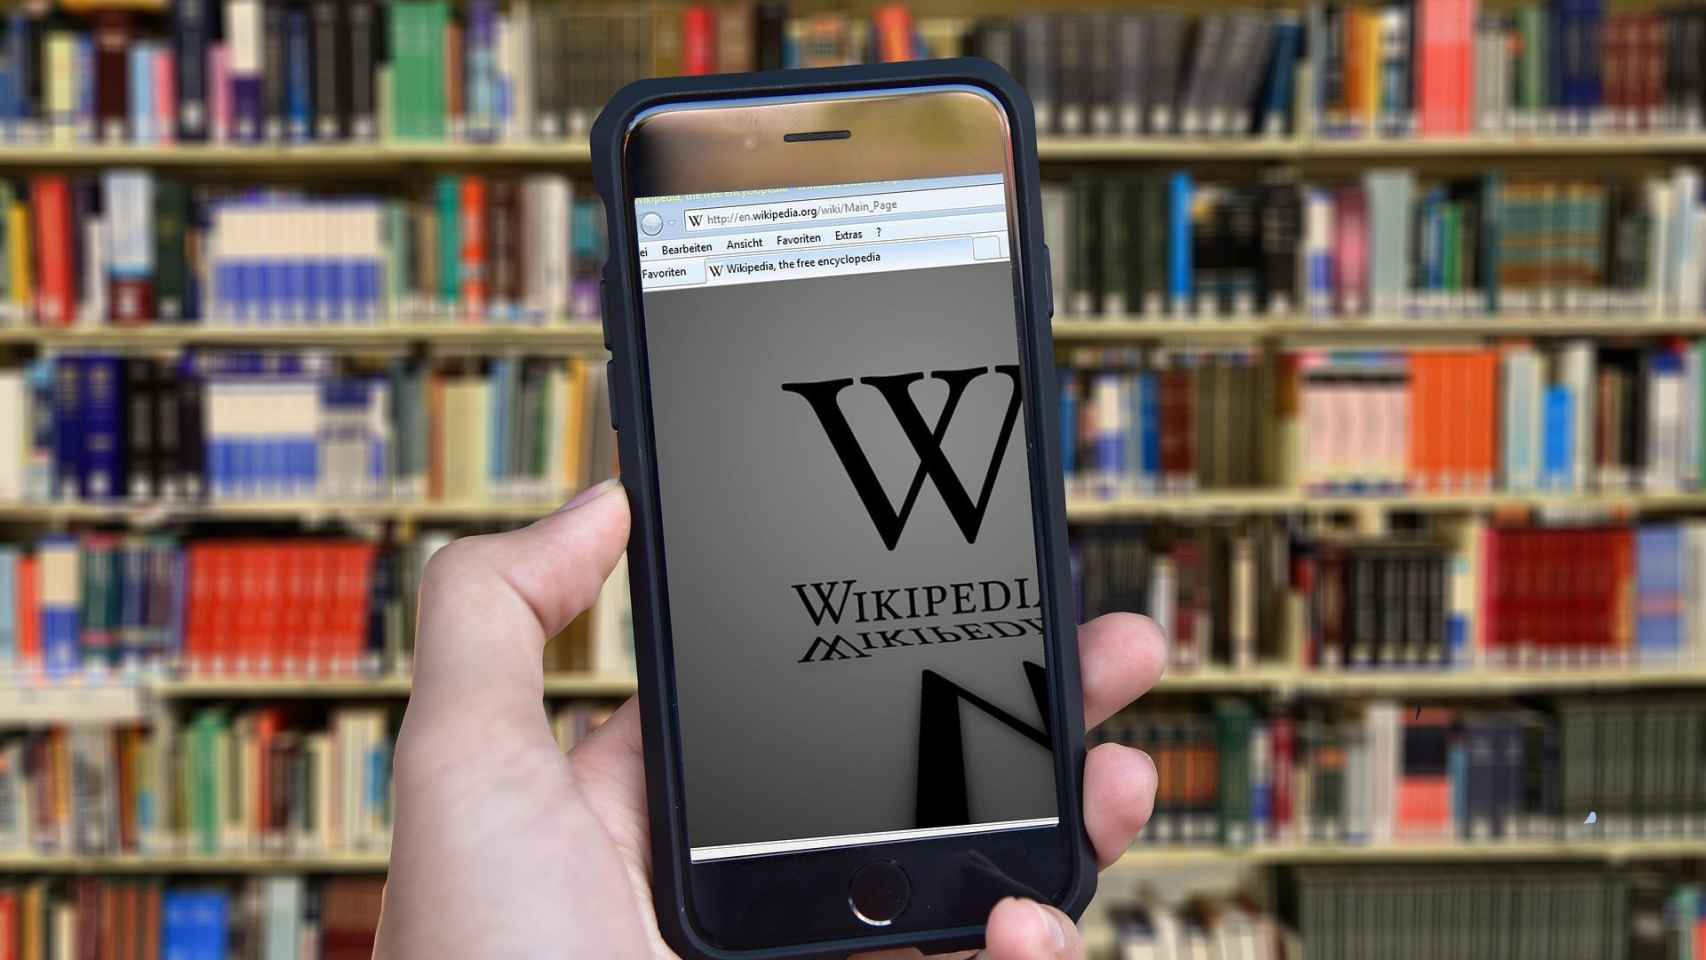 Un alumno consulta la Wikipedia en una biblioteca, desde su móvil / CG